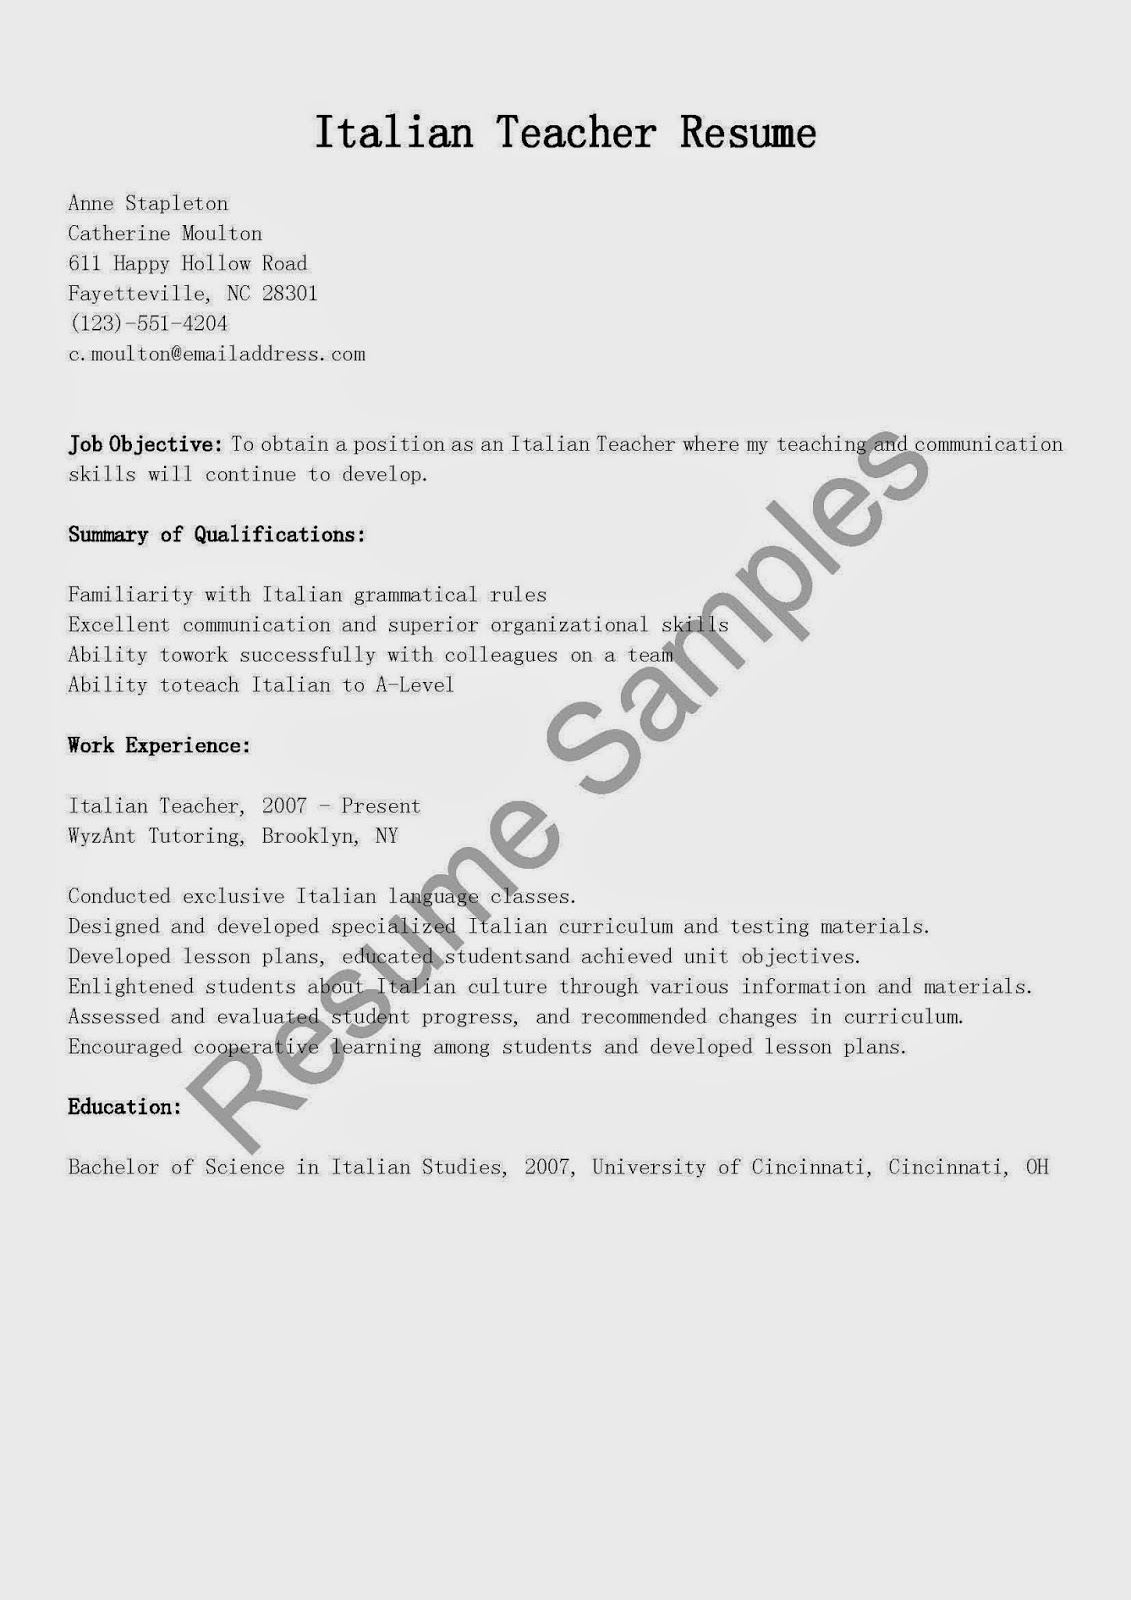 resume samples  italian teacher resume sample